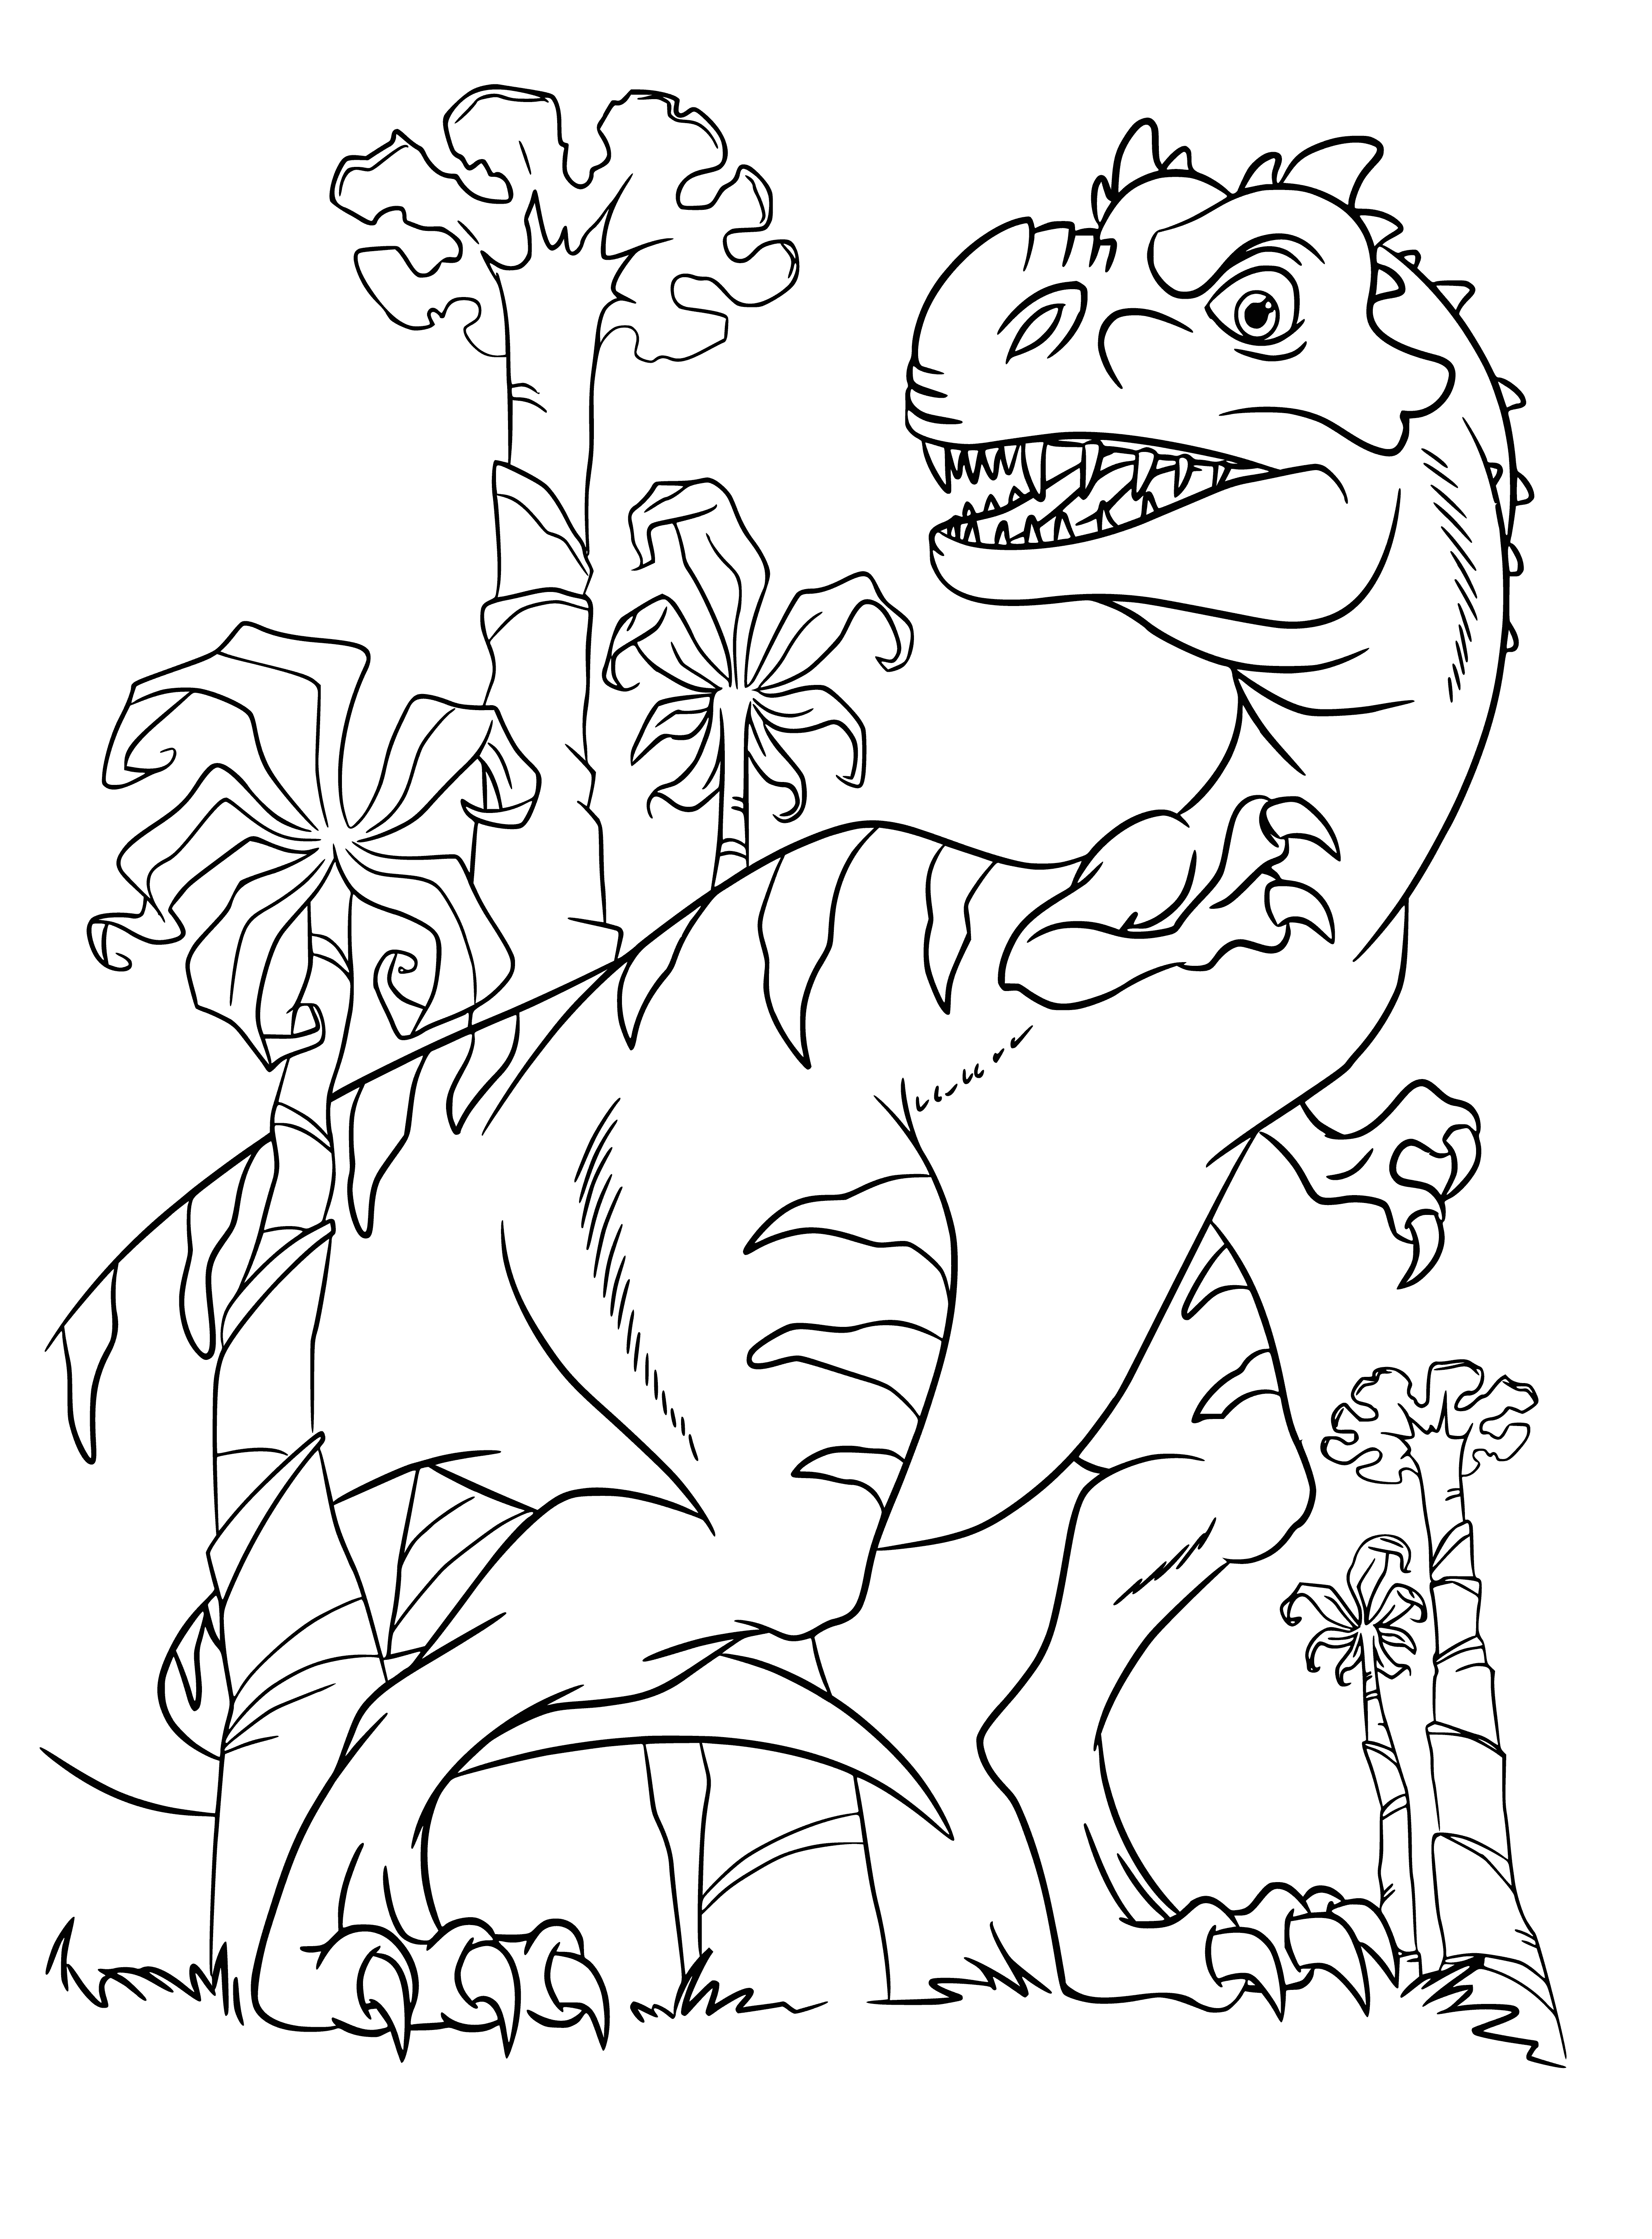 Динозавры раскраска а4. Раскраски Ледниковый период 3 Эра динозавров. Динозавры / раскраска. Динозавры для раскрашивания детям. Динозавр раскраска для детей.